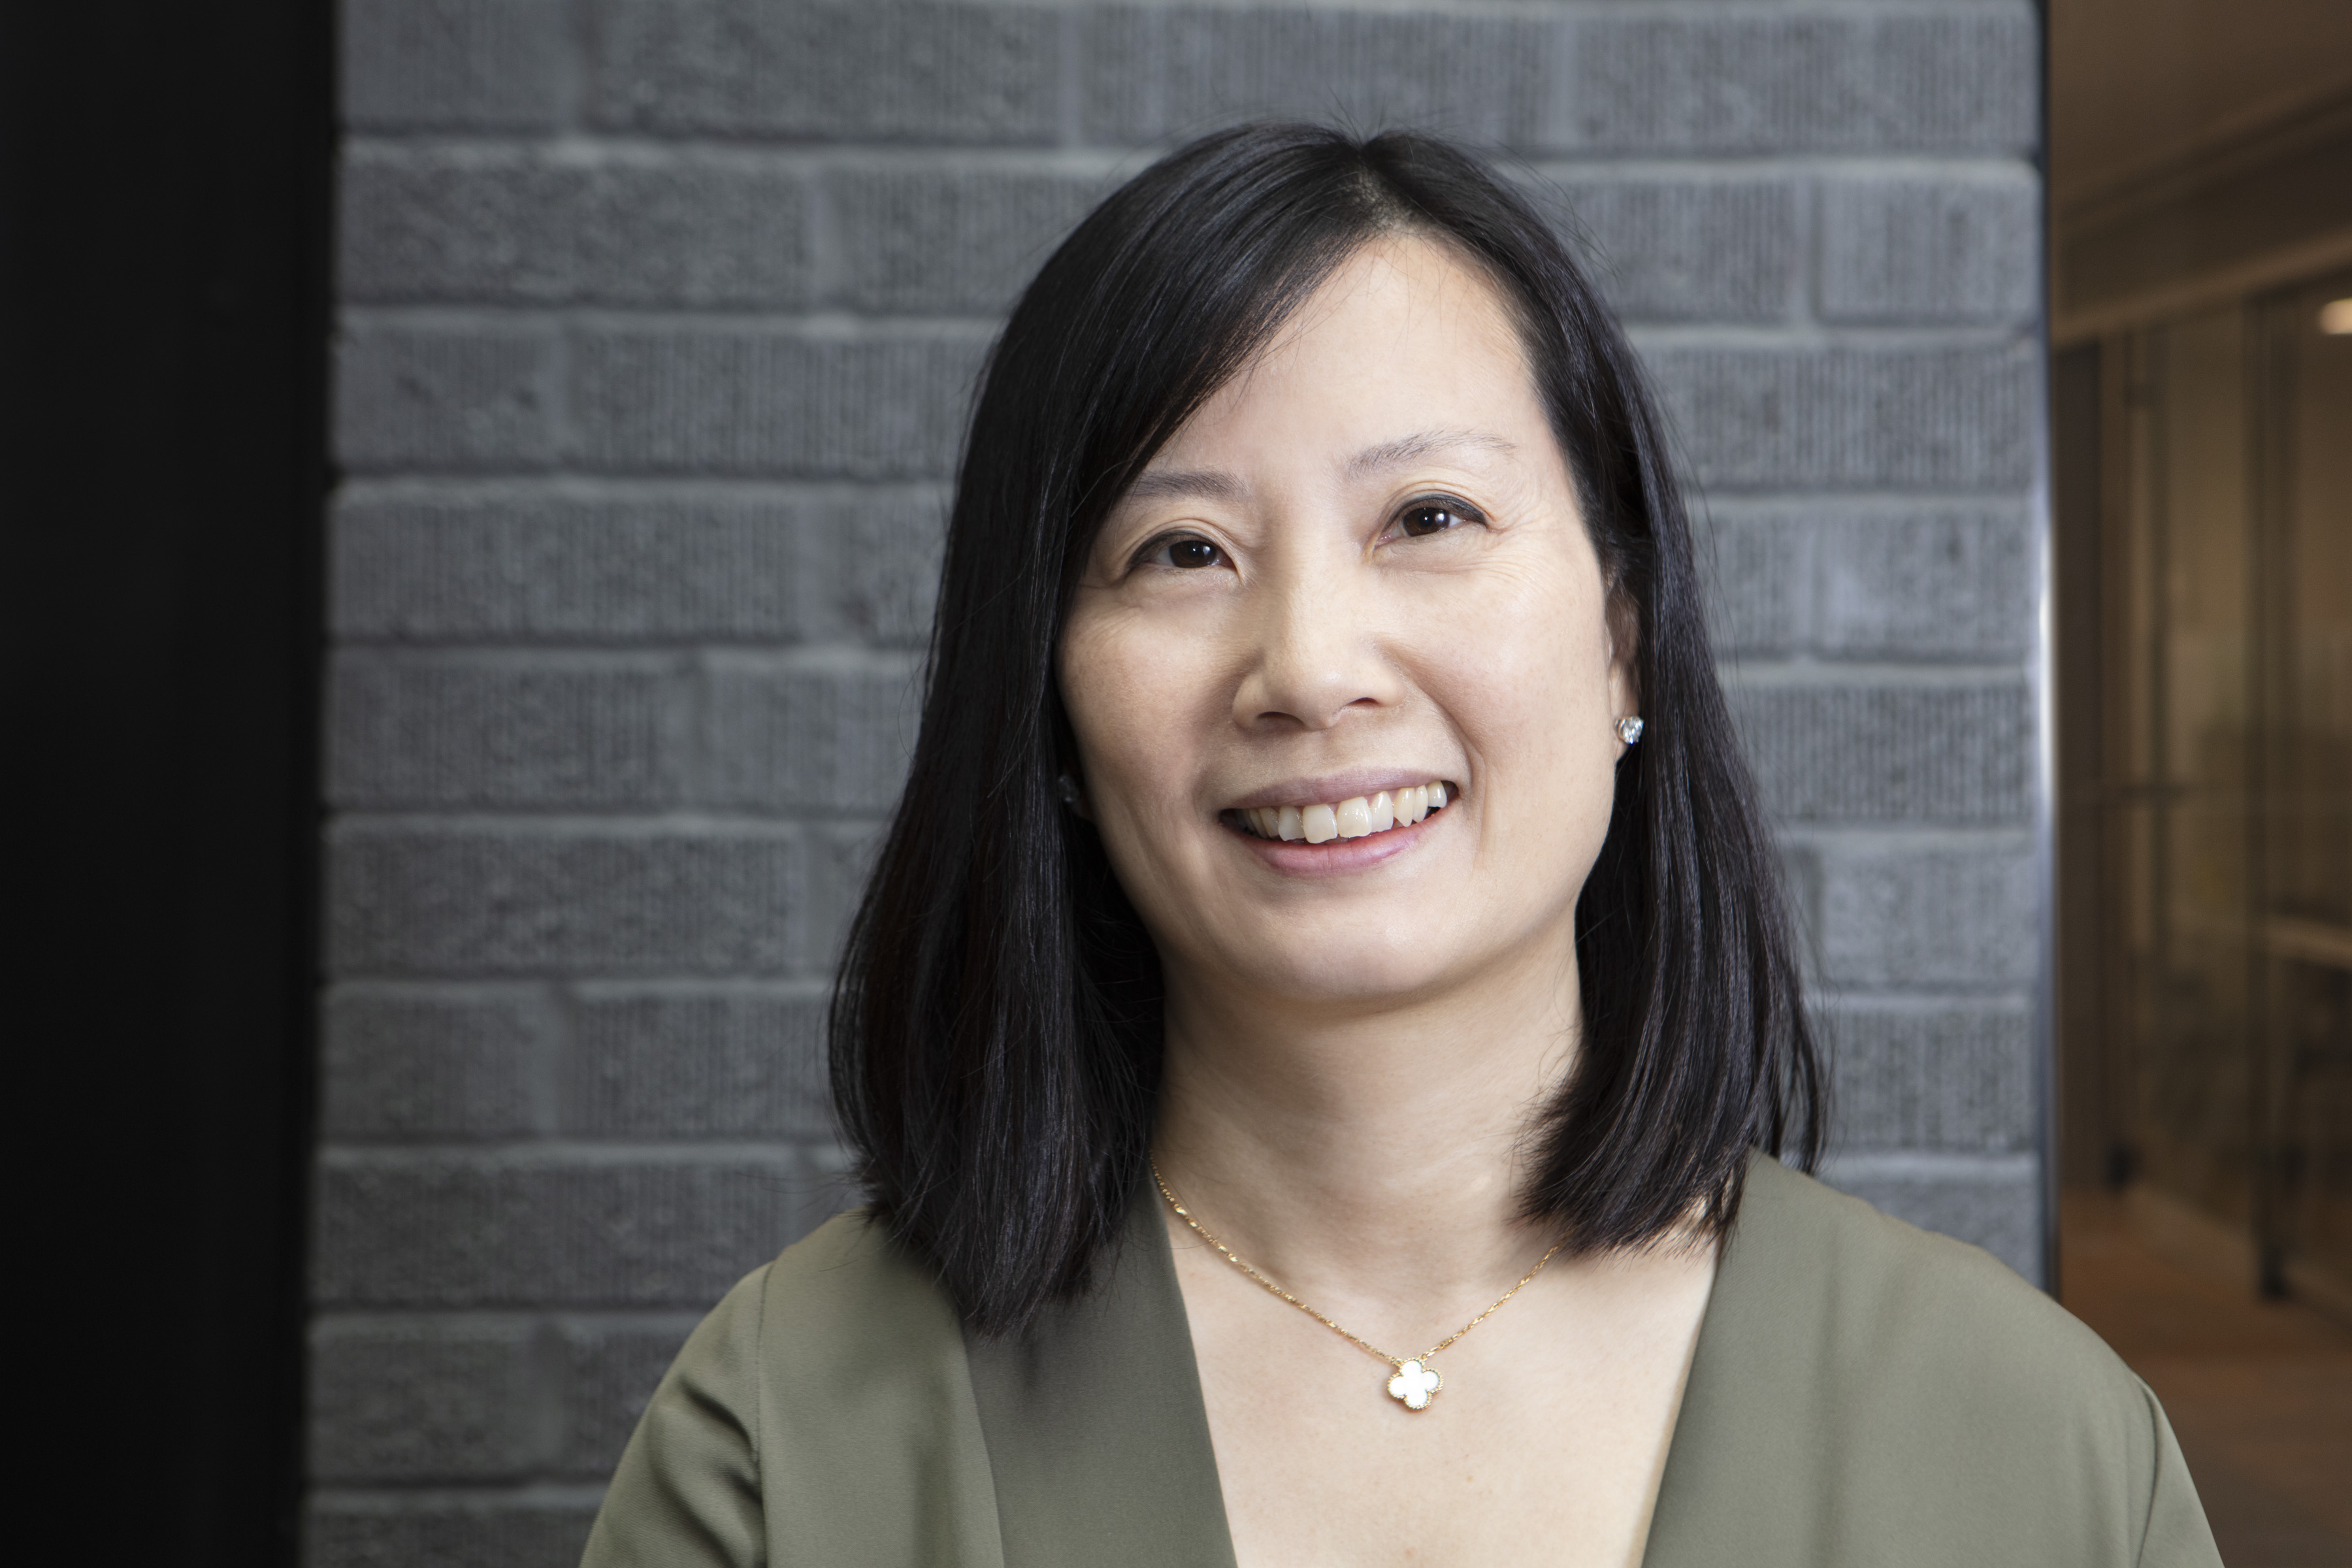 Ann Wu, MD, MPH